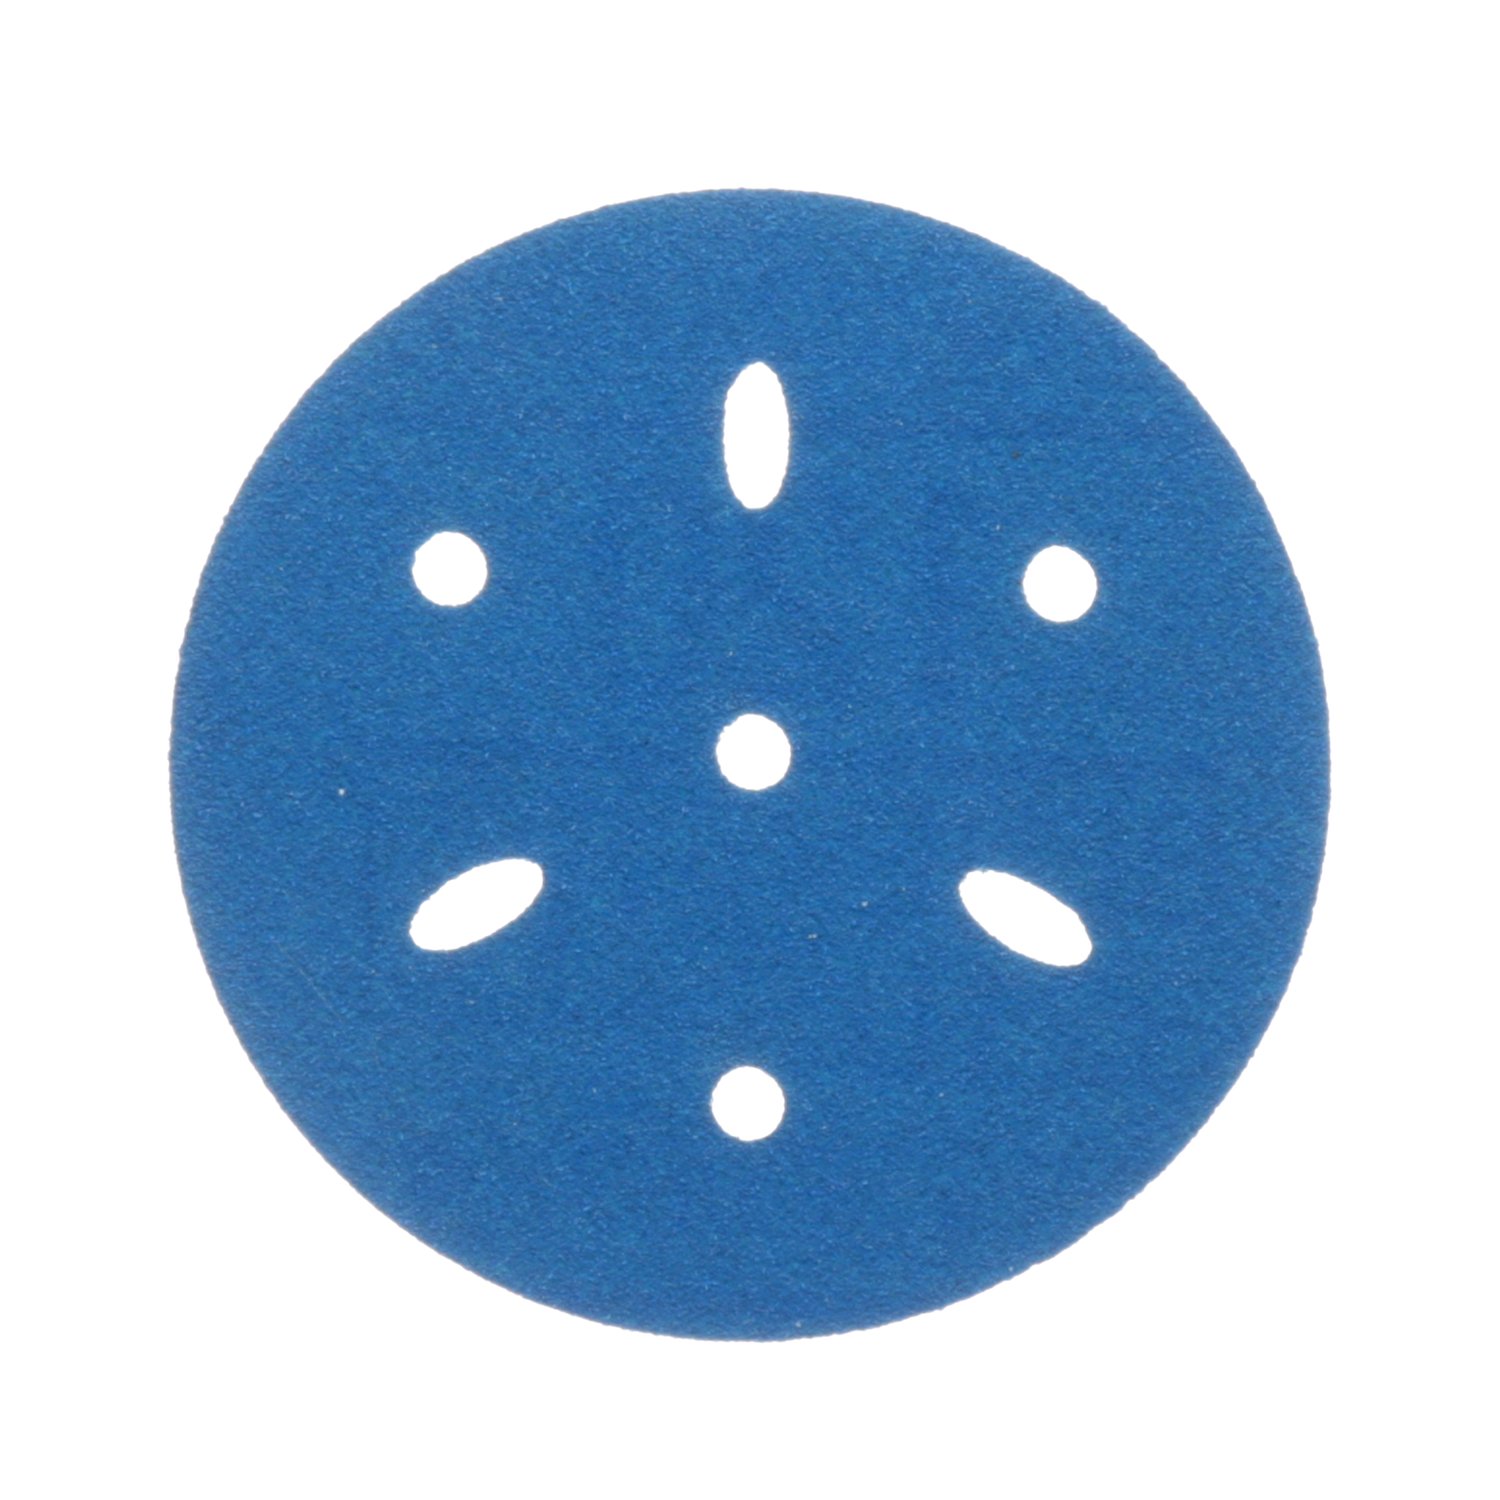 7100091342 - 3M Hookit Blue Abrasive Disc Multi-hole, 36144, 3 in, 120 grade, 50
discs per carton, 4 cartons per case